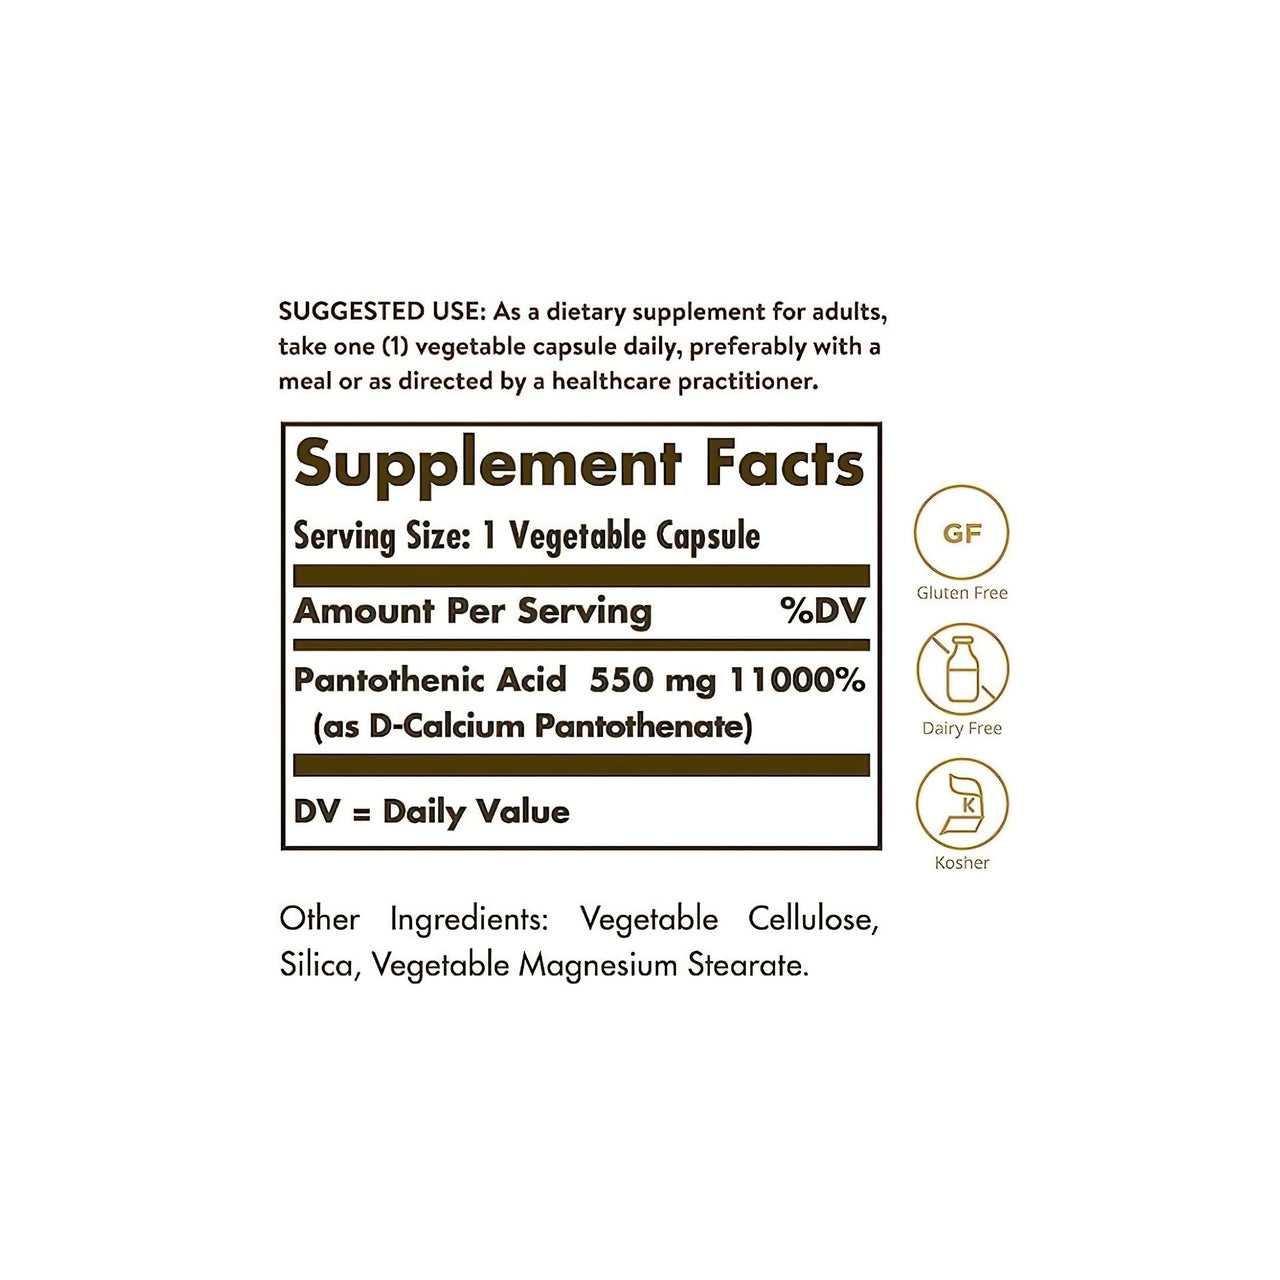 Etiqueta Solgar que muestra los ingredientes de un complemento alimenticio, incluido el Ácido pantoténico 550 mg 100 Cápsulas vegetales.